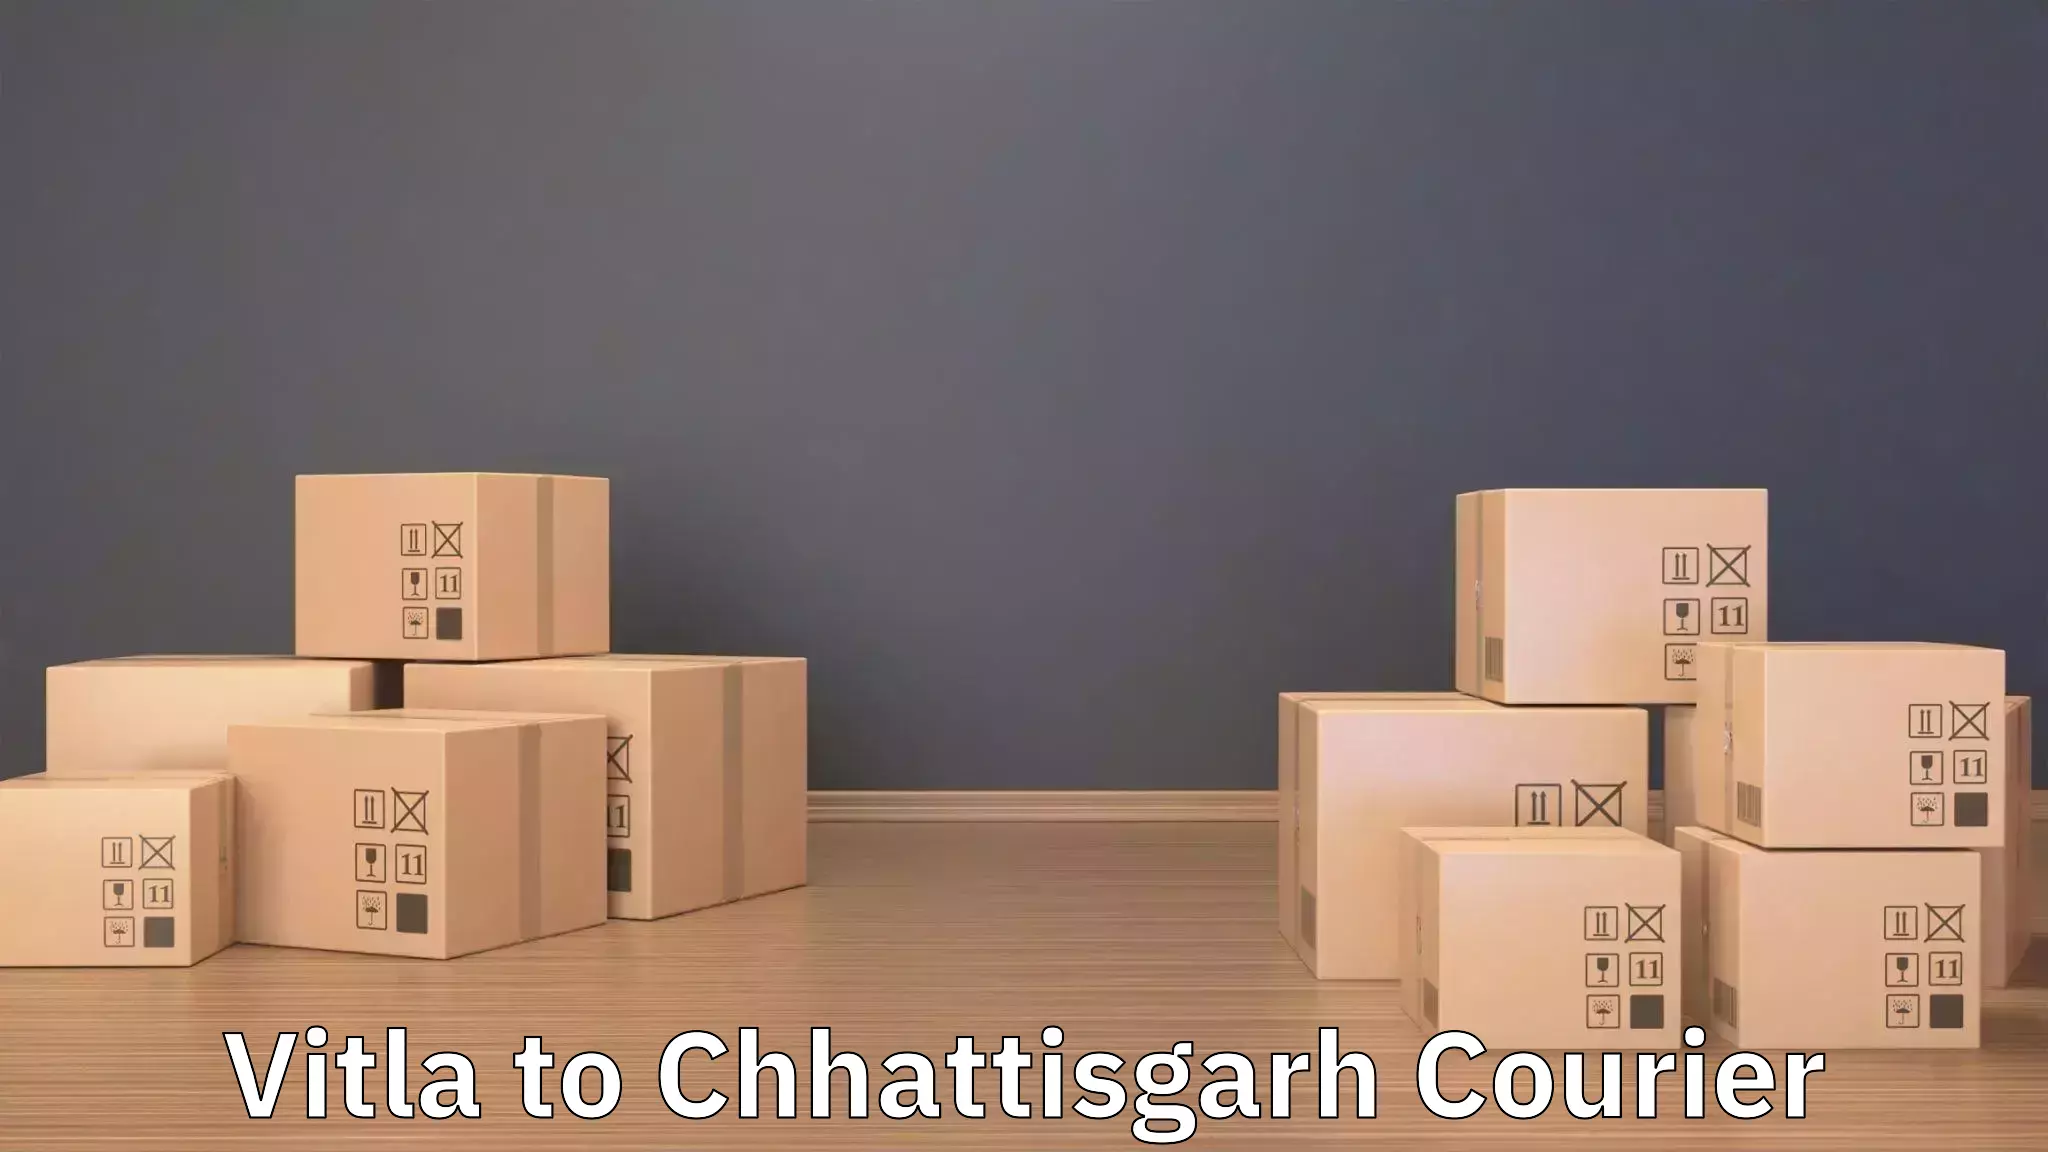 Efficient relocation services Vitla to Raigarh Chhattisgarh